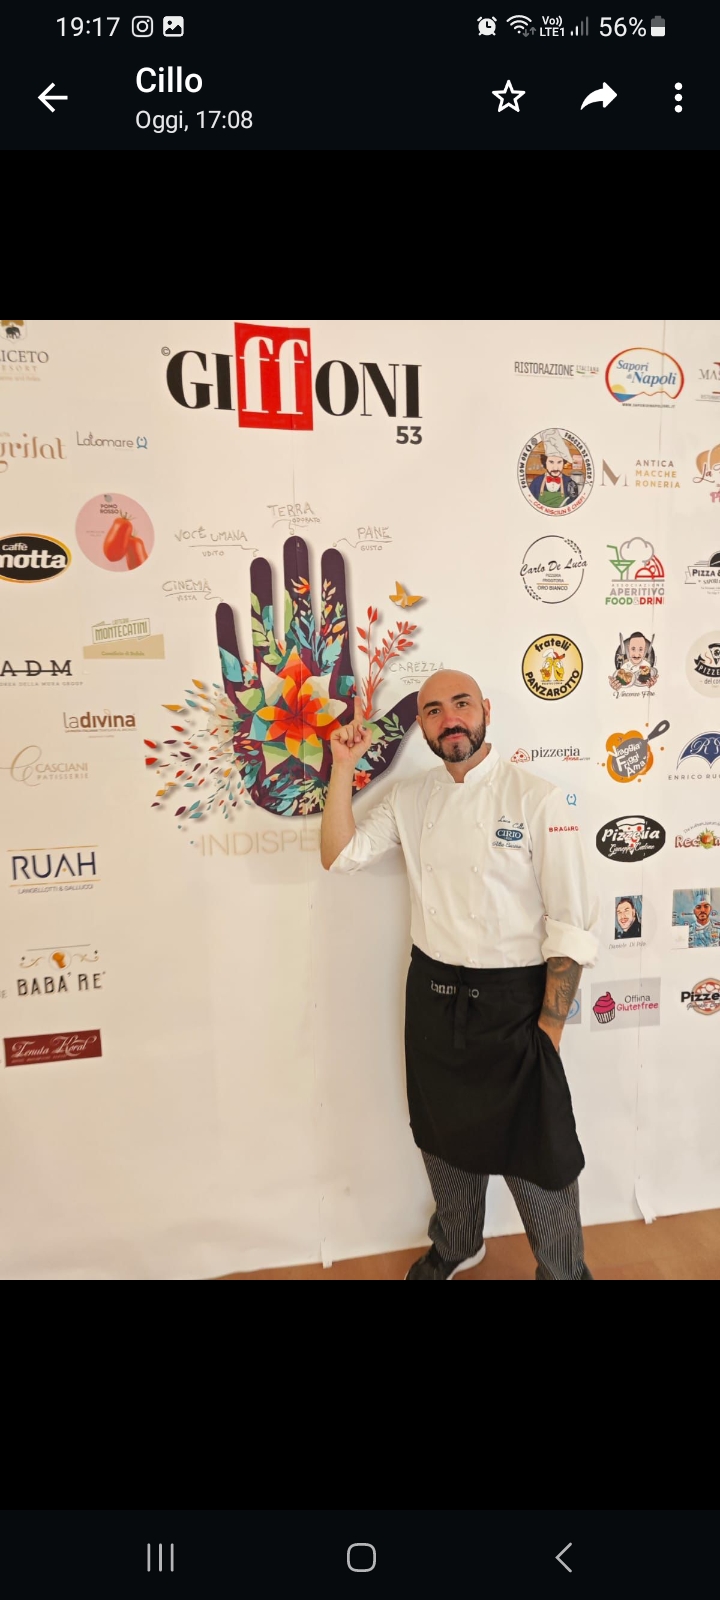 Il pizzaiolo Luca Cillo presente al “Dinner night” del Giffoni Film Festival